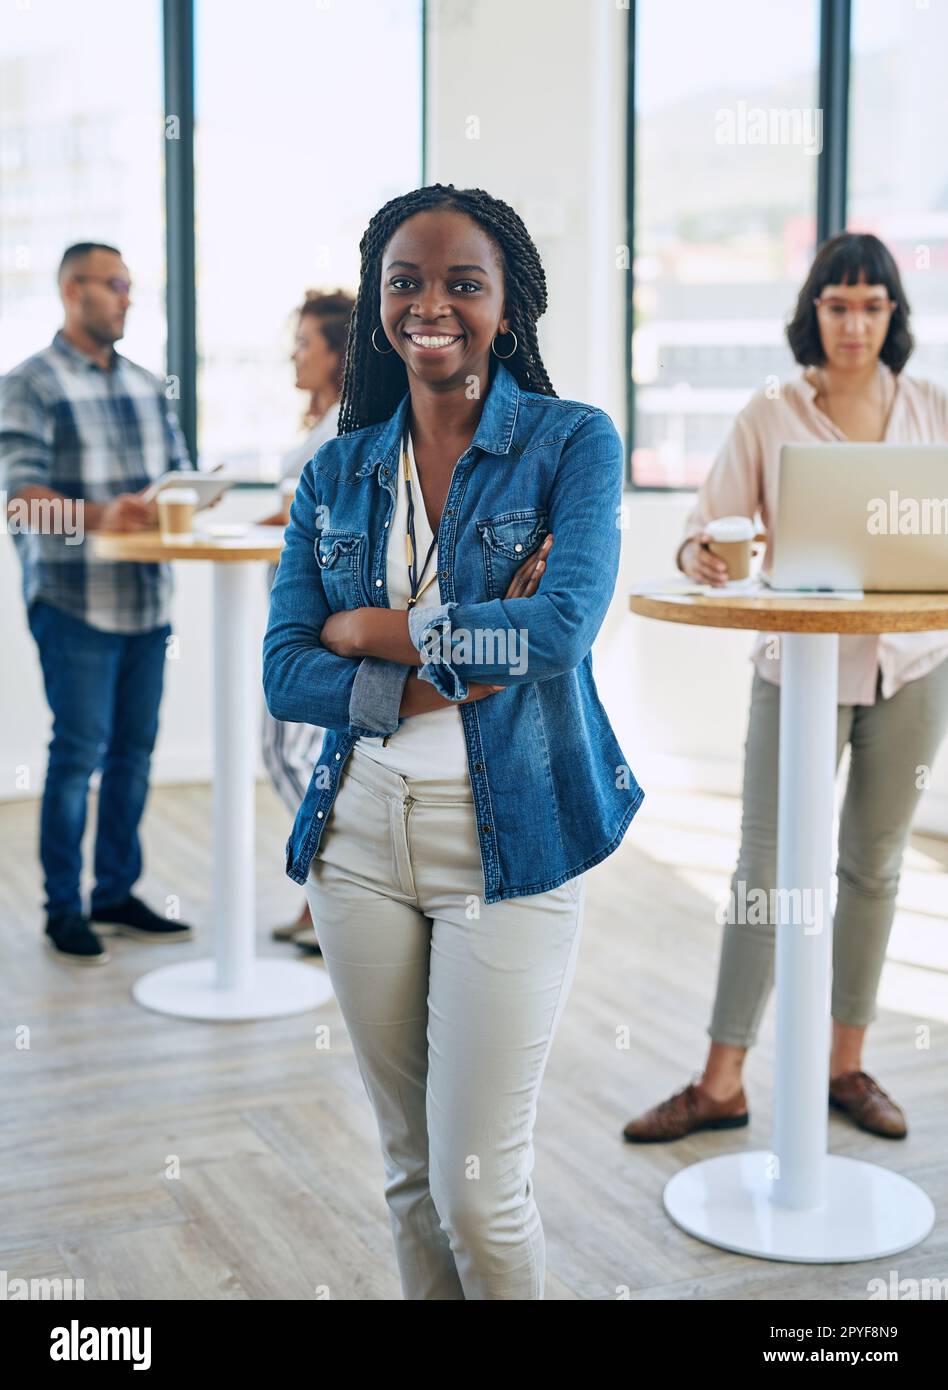 Waren das erfolgreiche Start-up, über das jeder sprach. Porträt einer selbstbewussten jungen Frau, die in einem modernen Büro mit ihren Kollegen im Hintergrund steht. Stockfoto